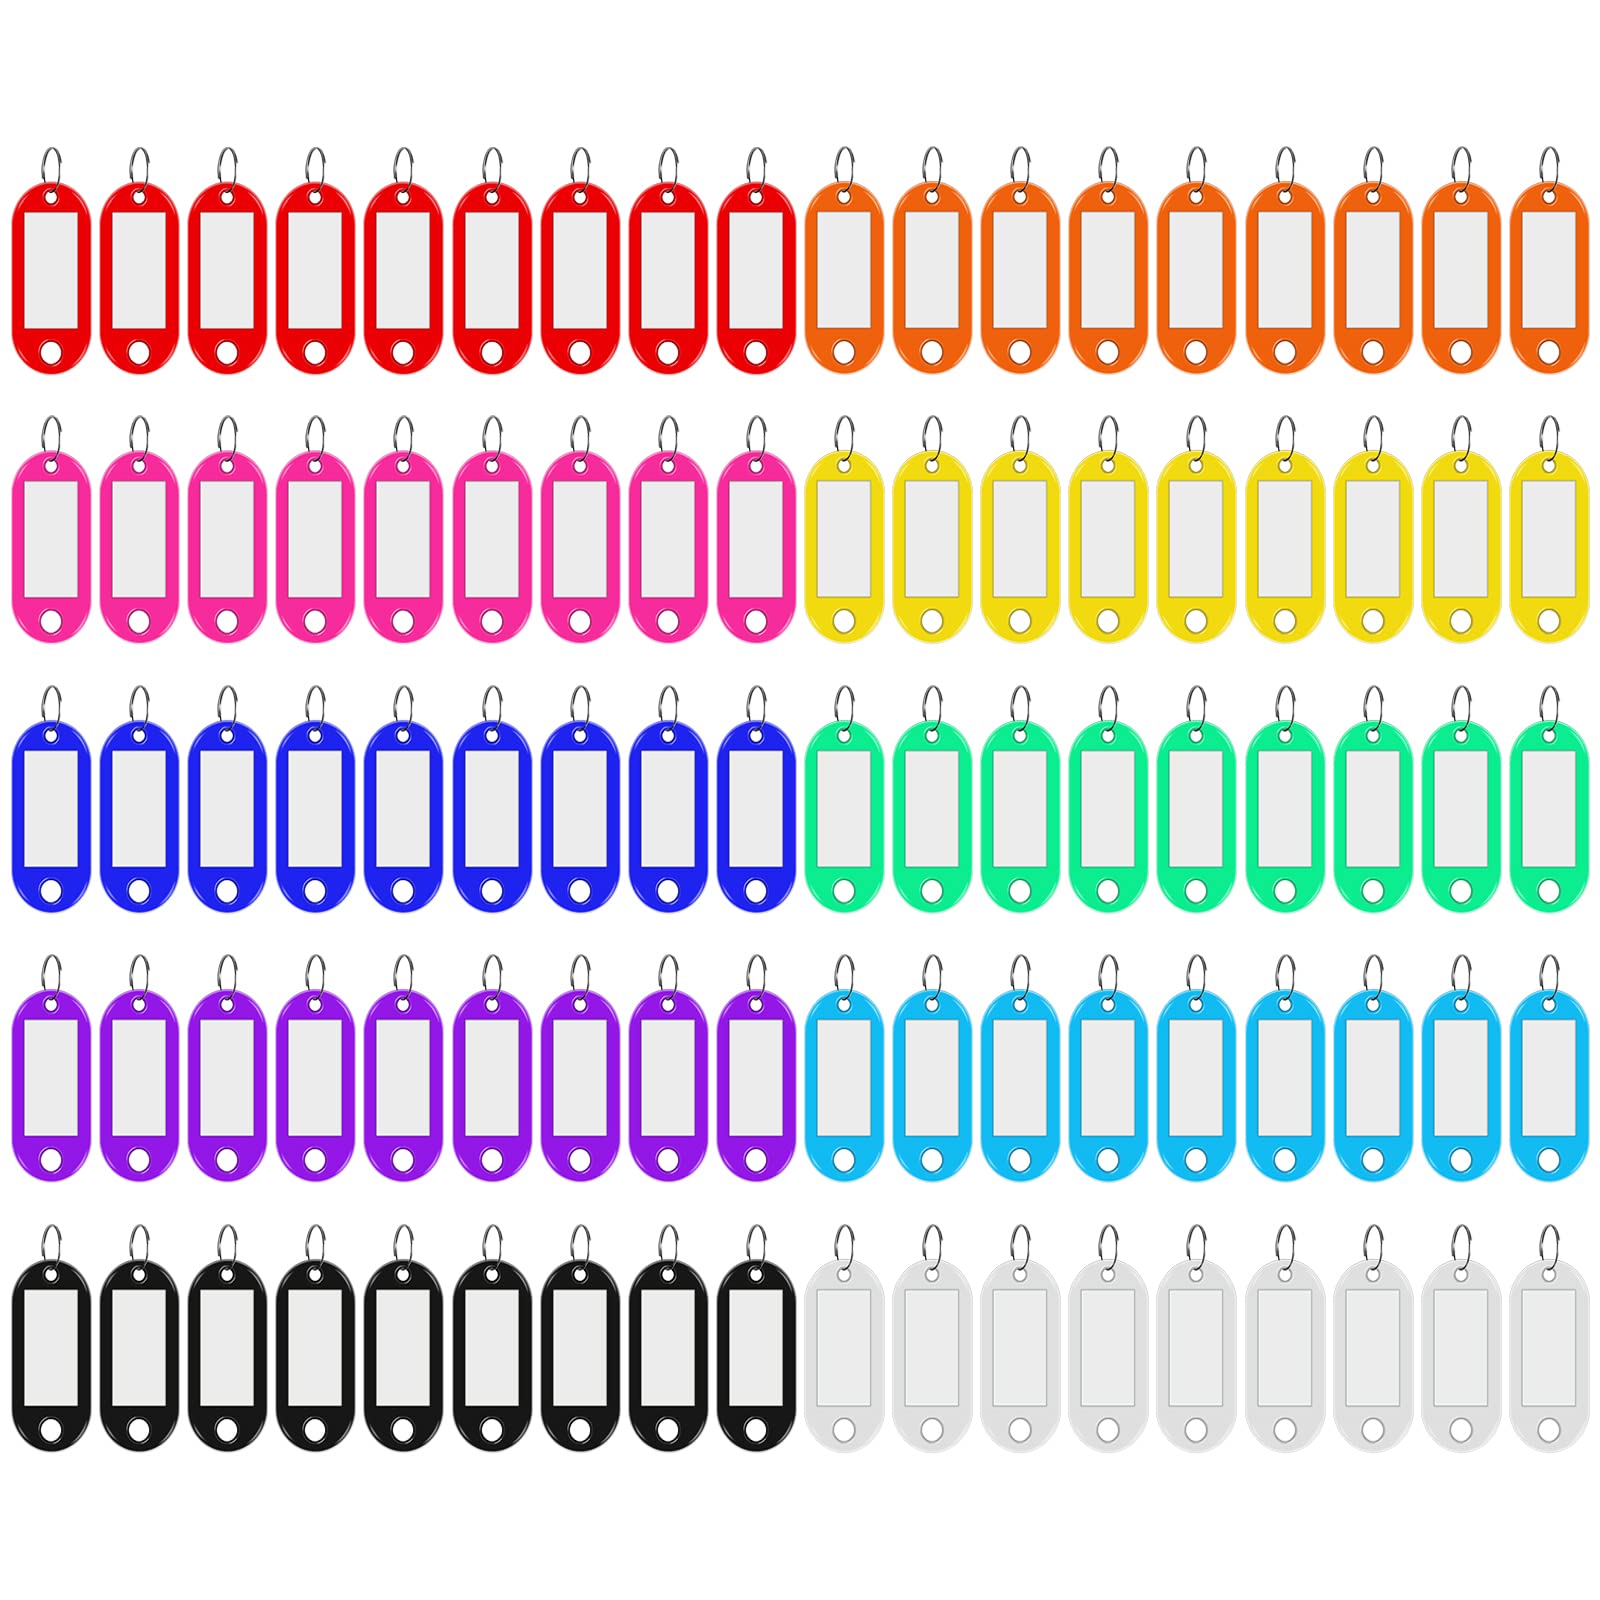 Skaaisont 90 Schlüsselanhänger aus Kunststoff, 10 Farben, beschriftbar für zu Hause, kann verwendet werden, um verschiedene Gegenstände zu markieren, z. B. Gepäck, Tiername von Skaaisont